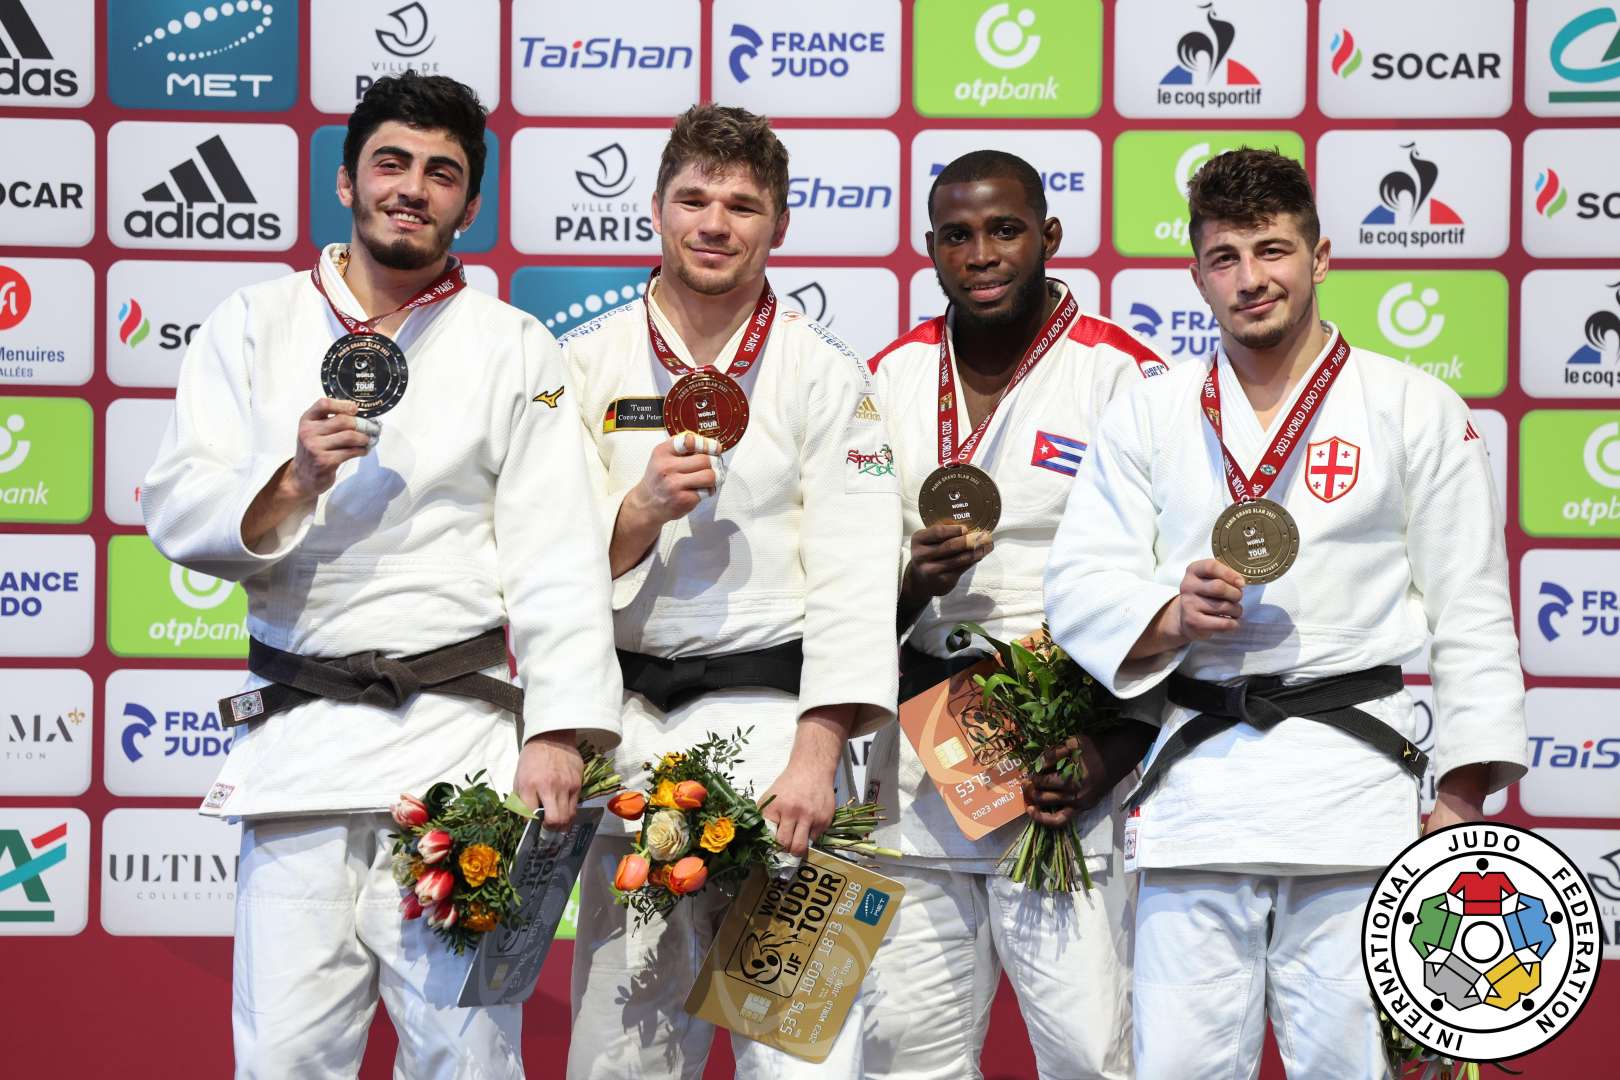 img/posts/judo-club-2012-uzvleri-boyuk-debilqe-turnirinde-2-medal-qazandilar-2023-02-06-142514/6.jpg